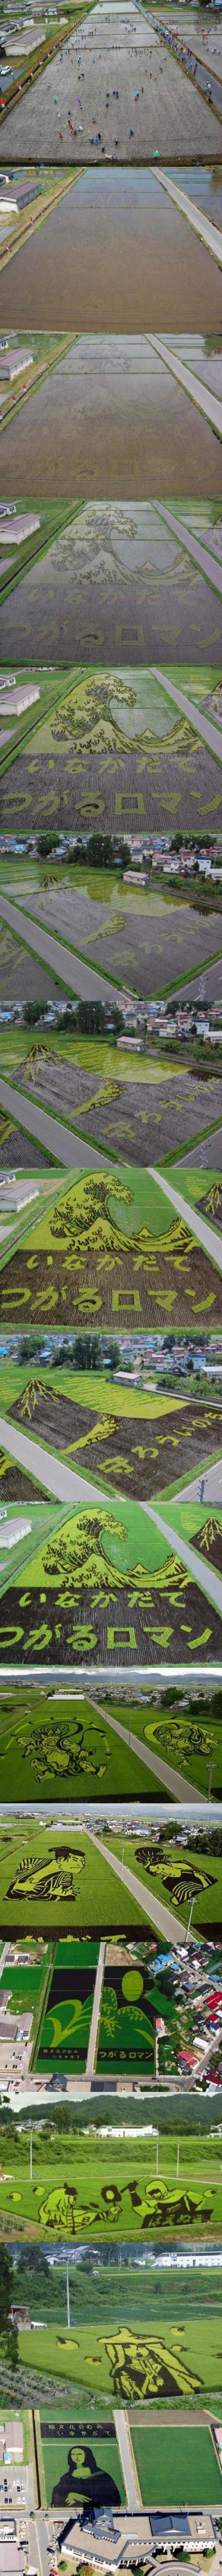 Des rizières cultivées de façon à ce qu'elles fassent des dessins vues du ciel.